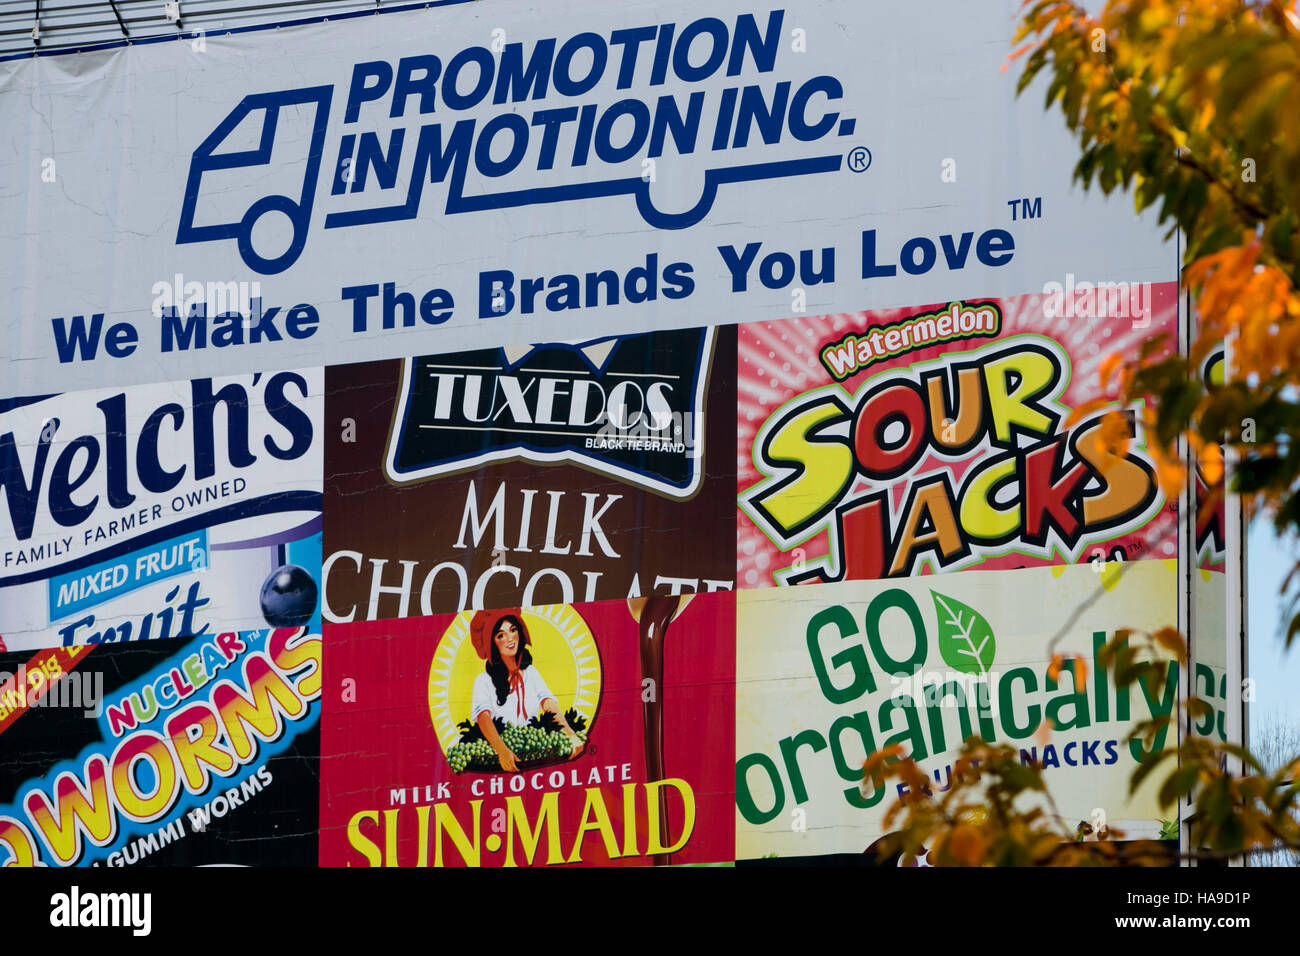 Un logotipo cartel fuera de una instalación ocupada por la promoción en movimiento Companies, Inc., en Somerset, Nueva Jersey el 6 de noviembre de 2016. Foto de stock